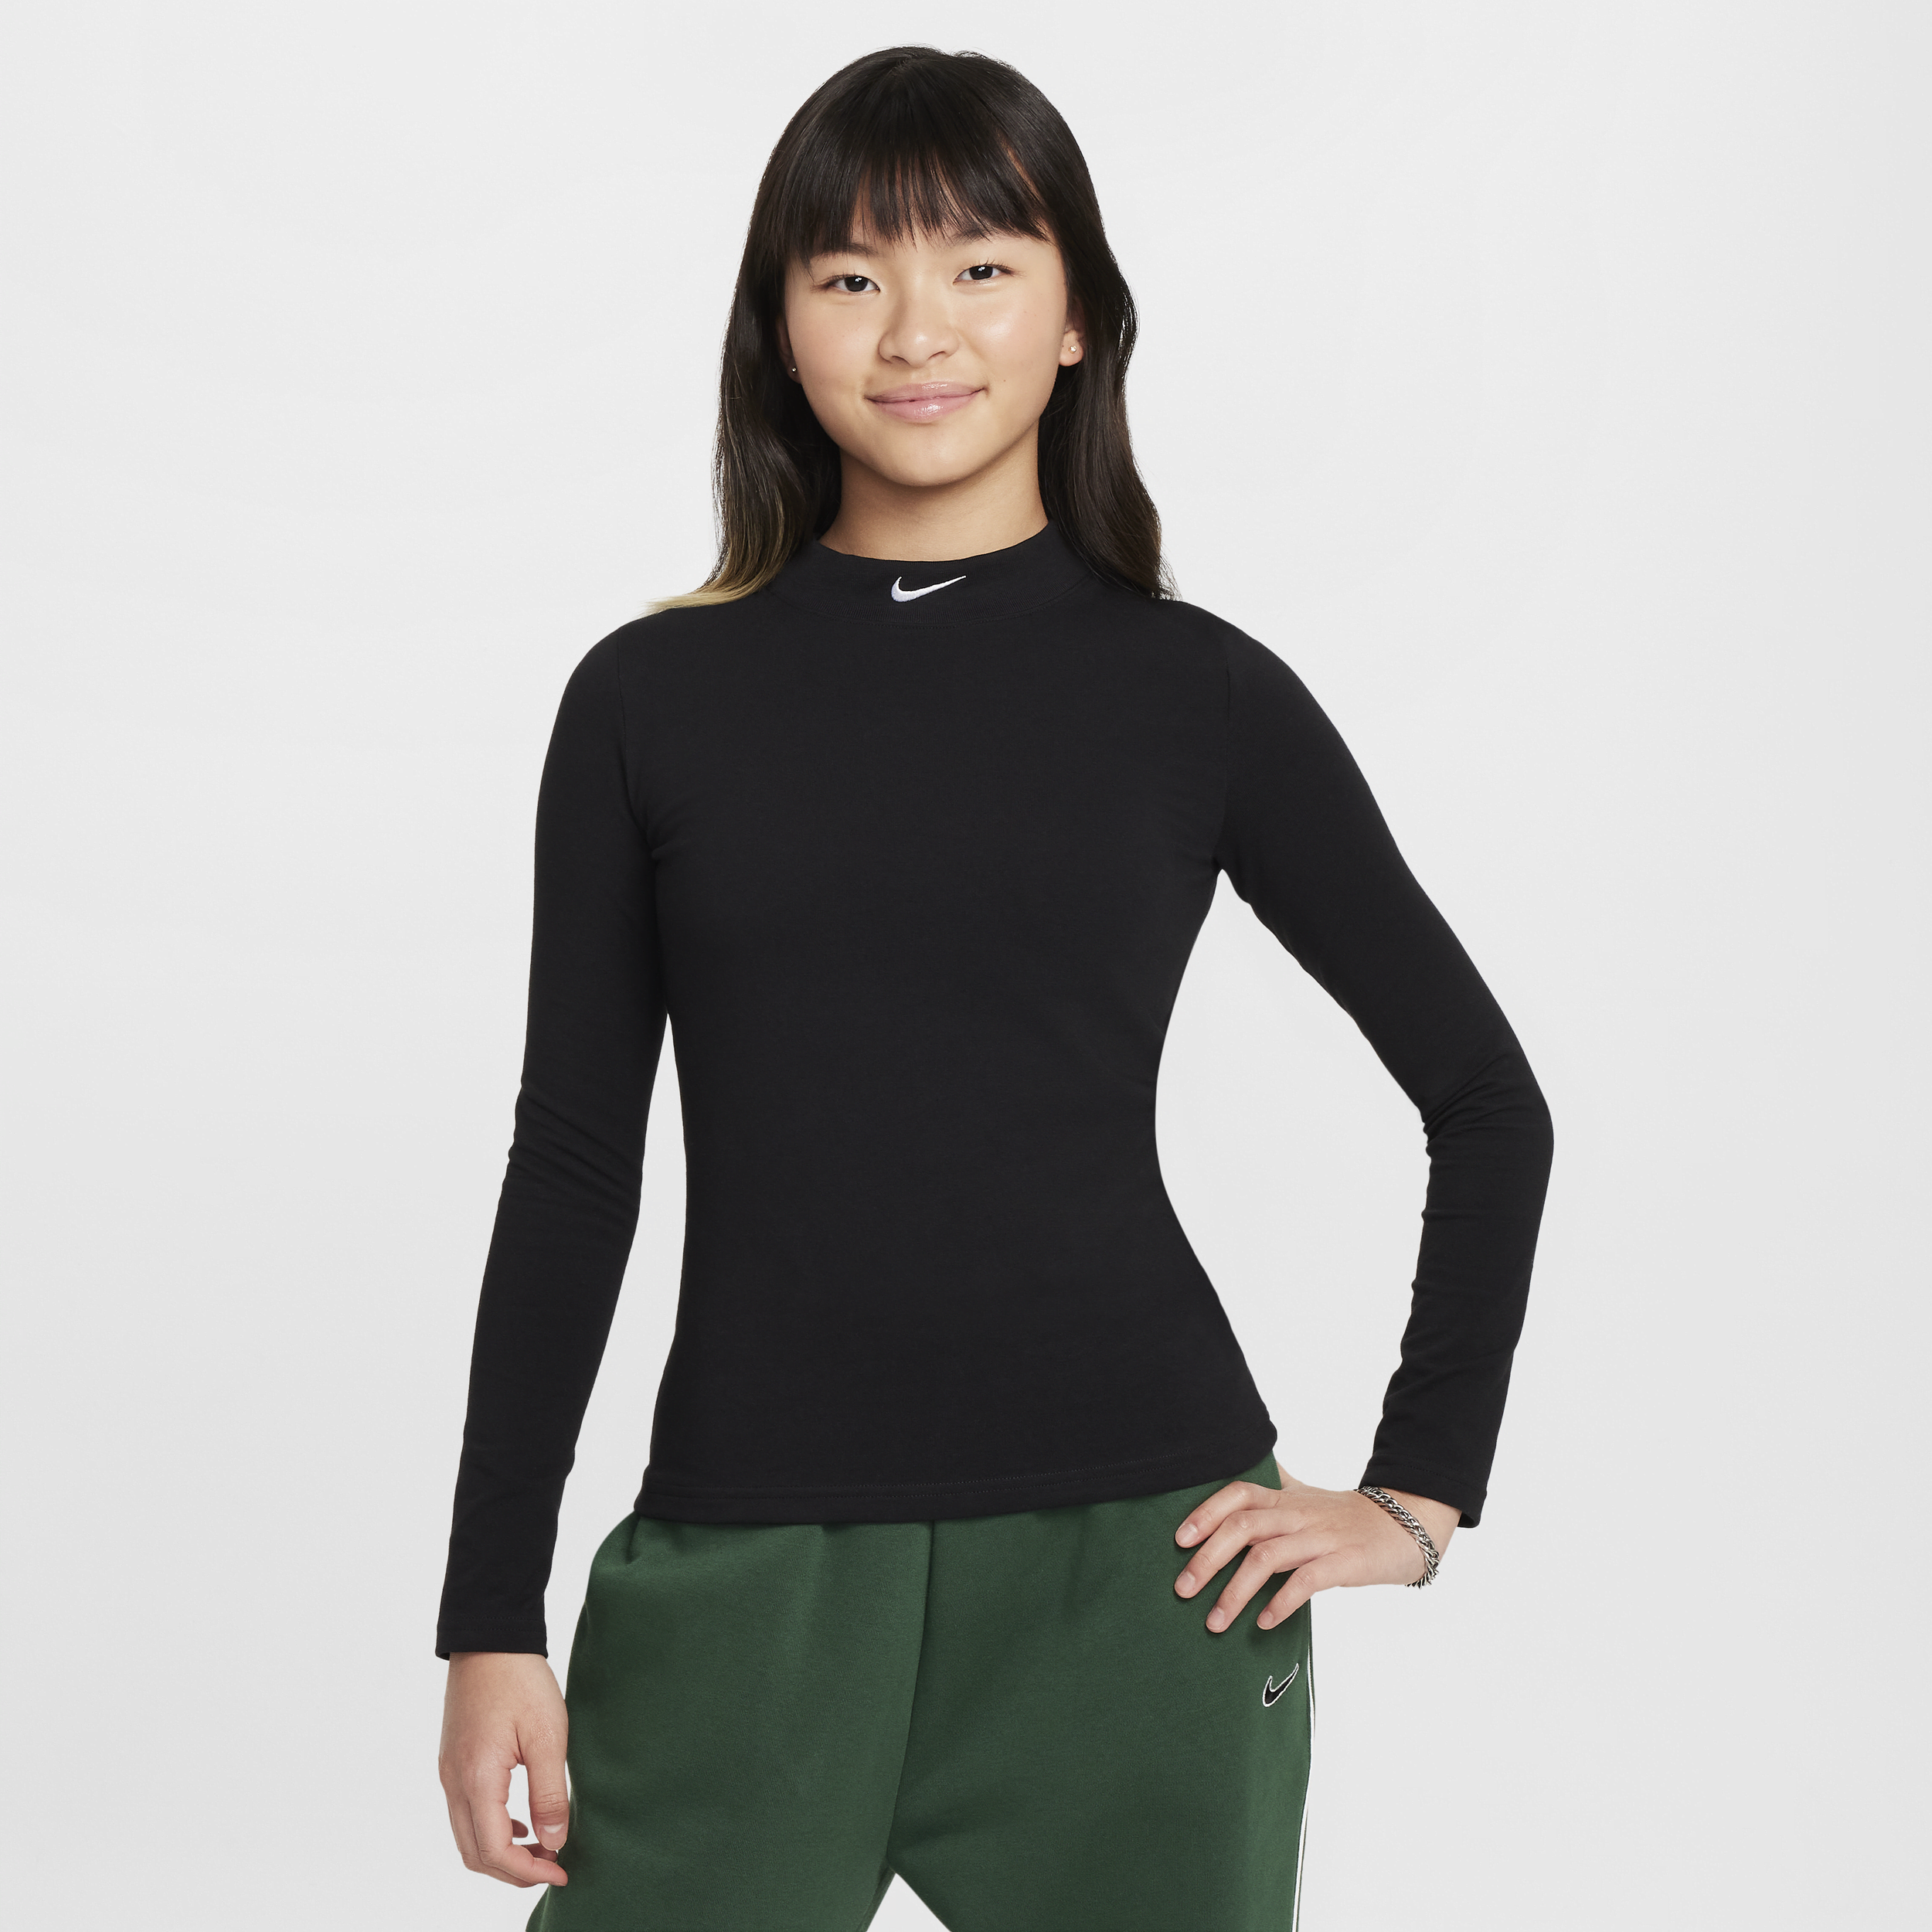 Nike Sportswear top met lange mouwen voor meisjes - Zwart